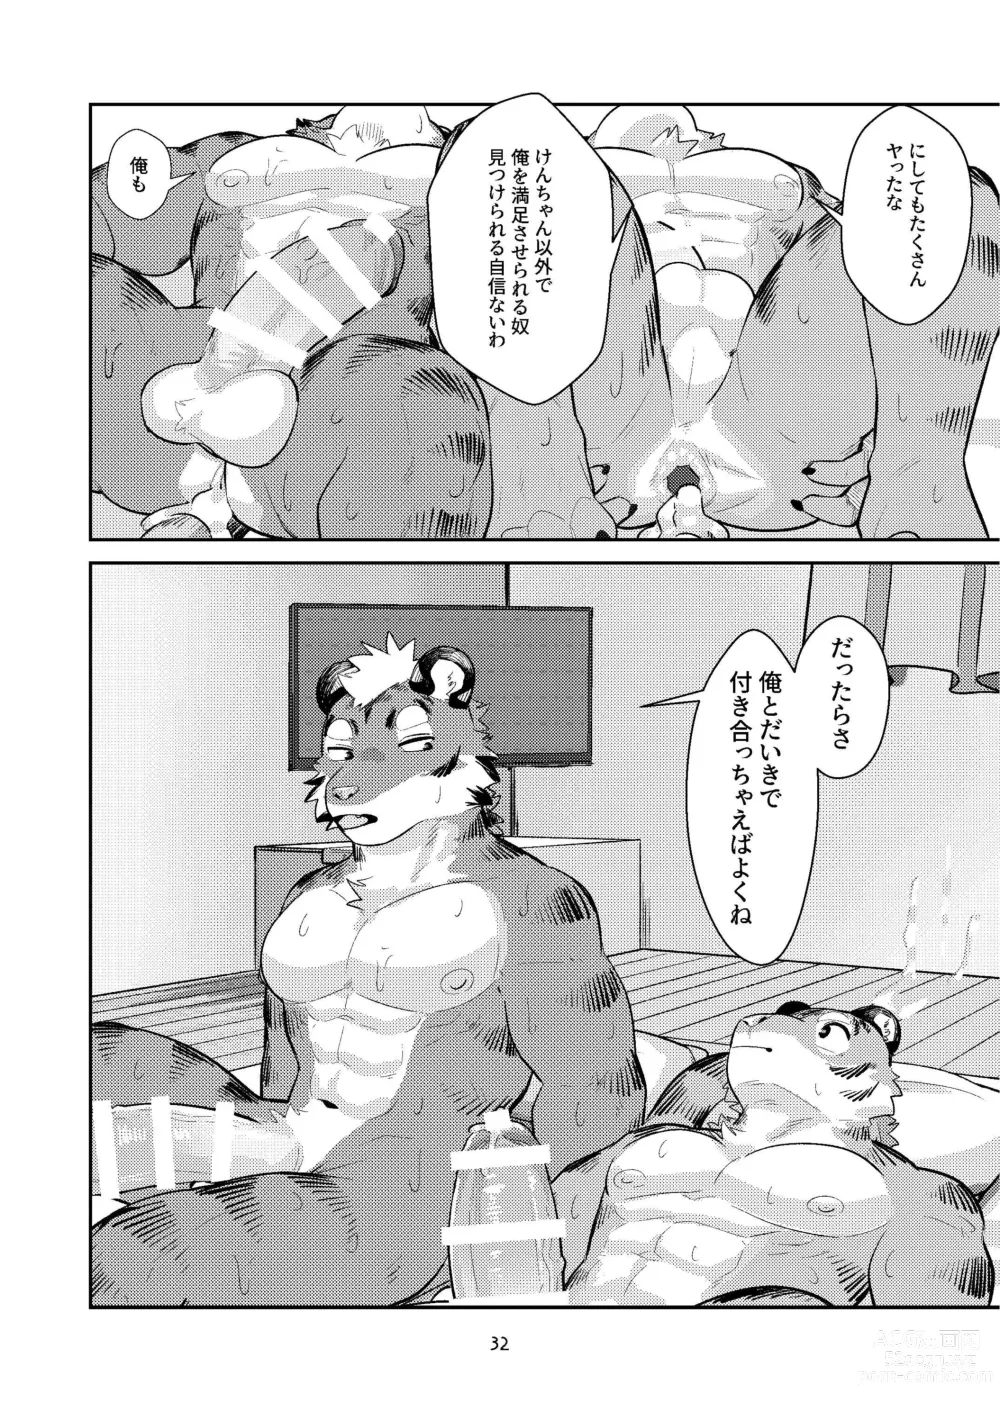 Page 32 of doujinshi Hajimete wa Tora no Ana de!